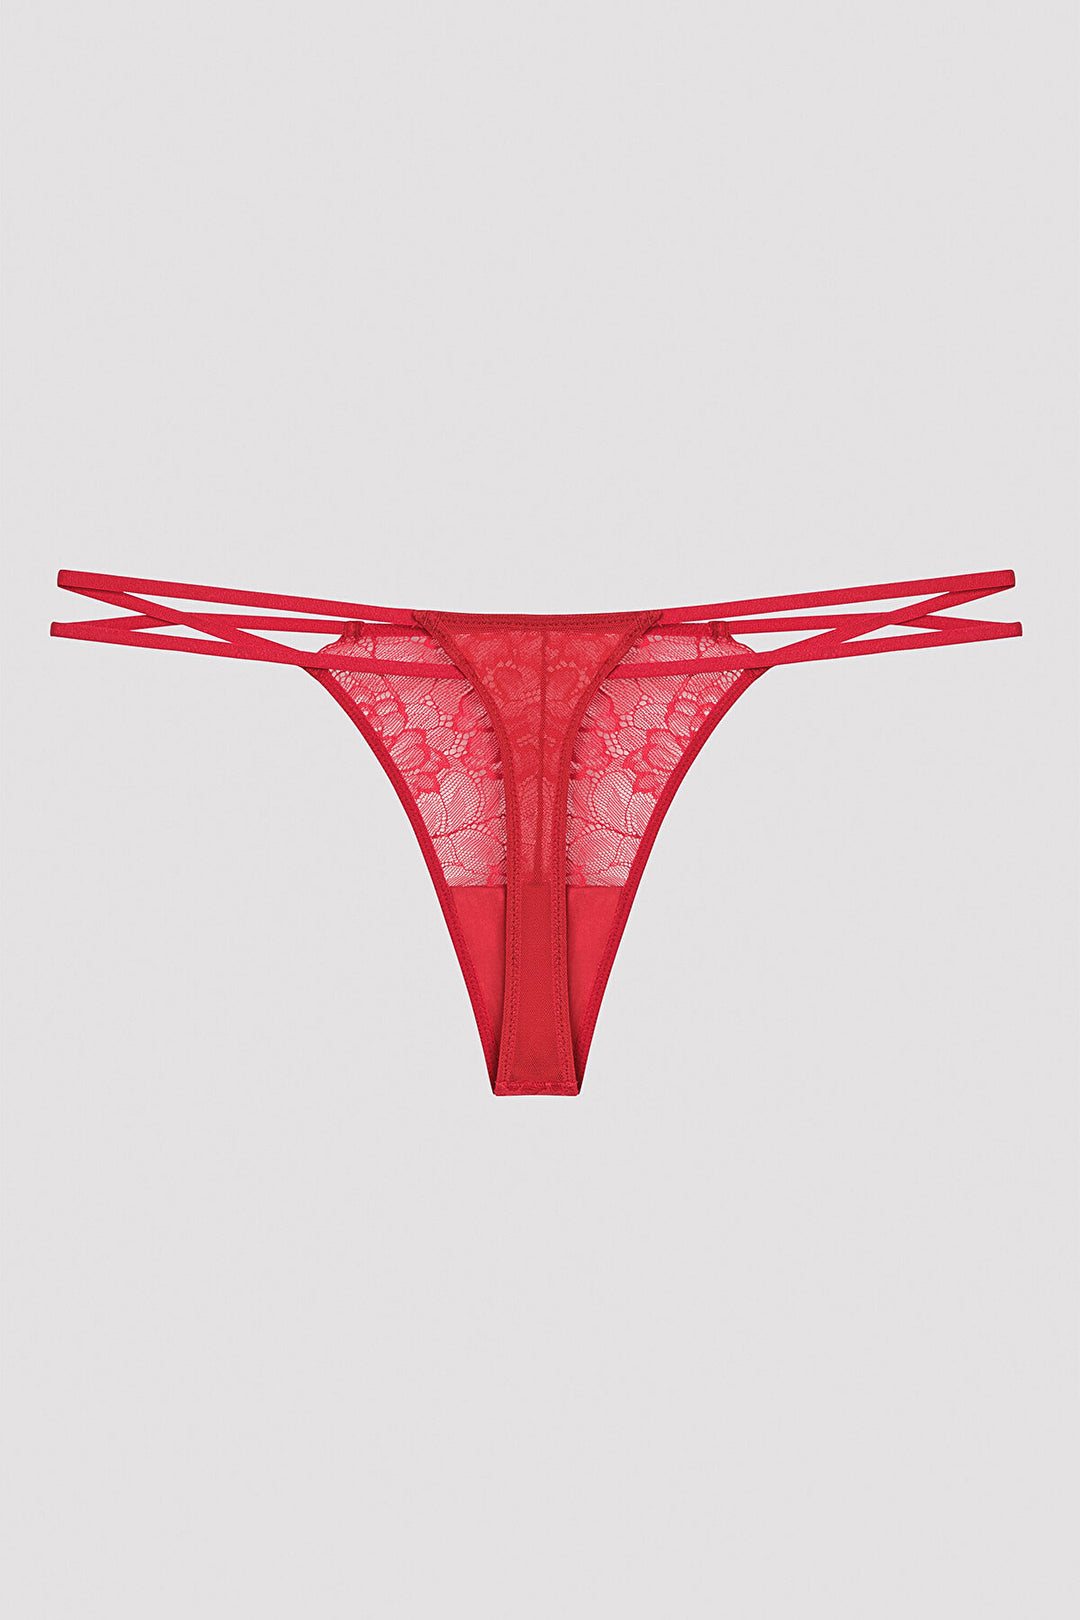 Treso Red Thong Panties